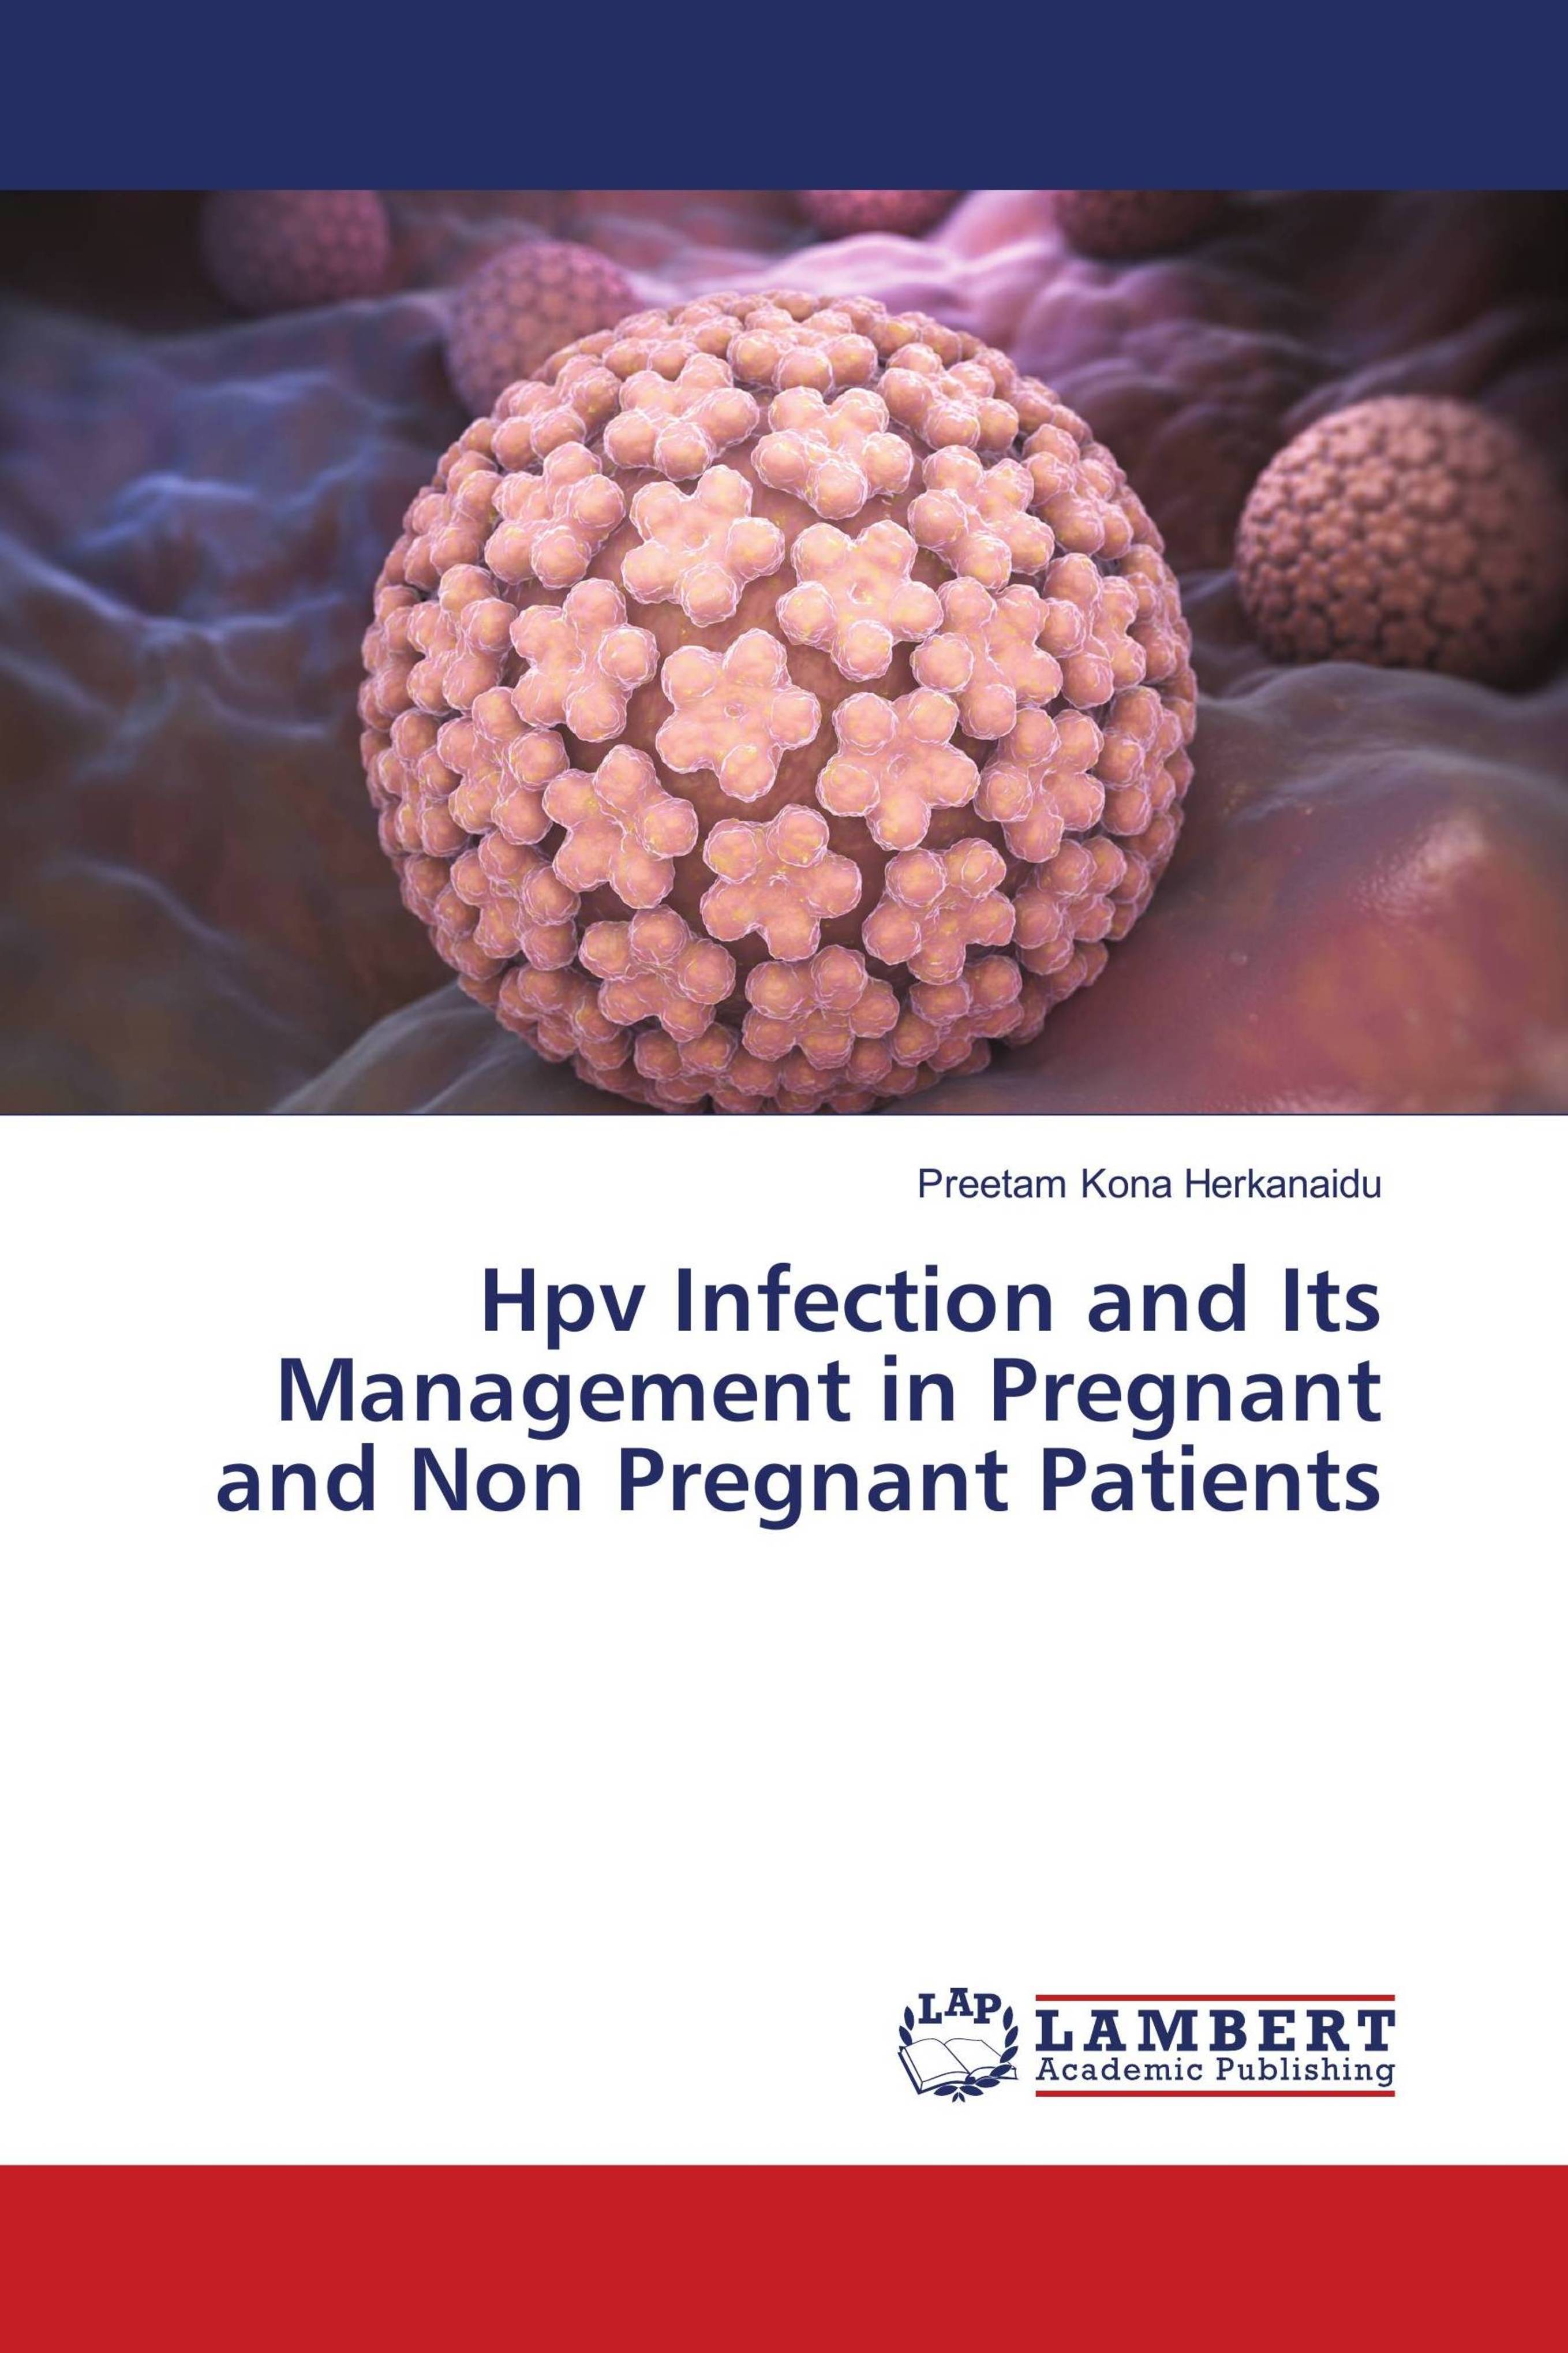 human papillomavirus infection in pregnancy